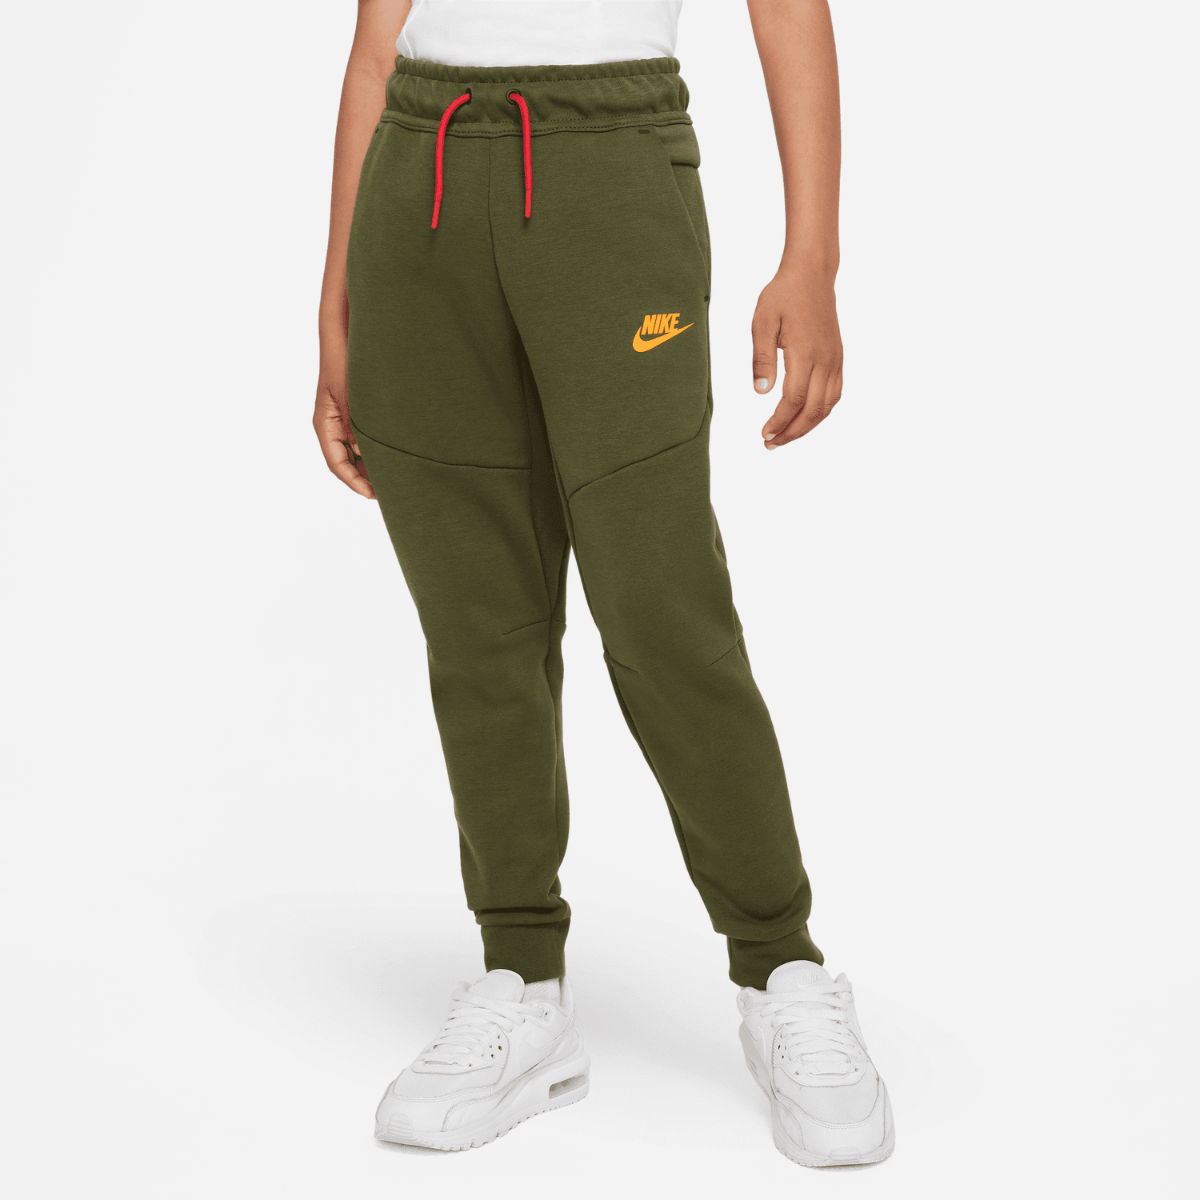 Pantalon jogging Nike Tech Fleece Junior - Kaki/Noir